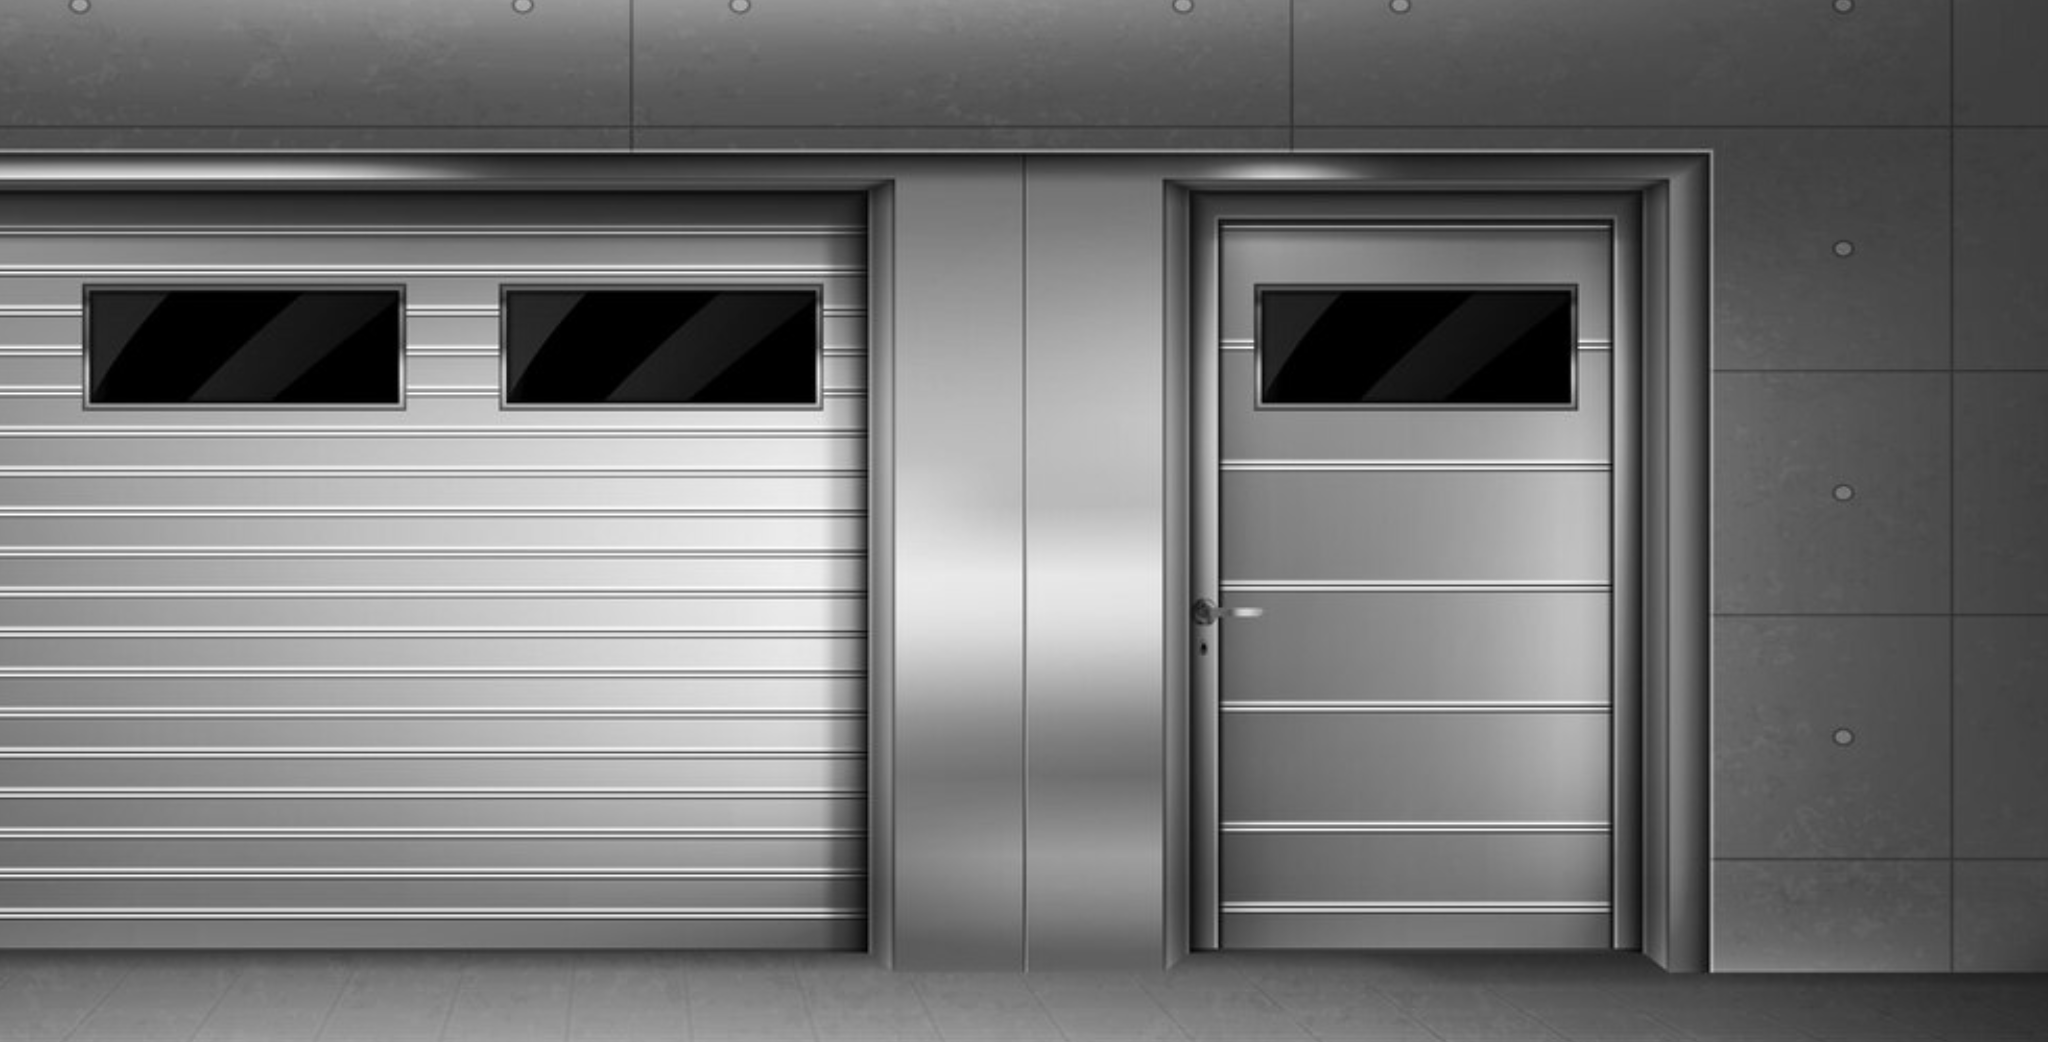 How long do commercial steel doors last?